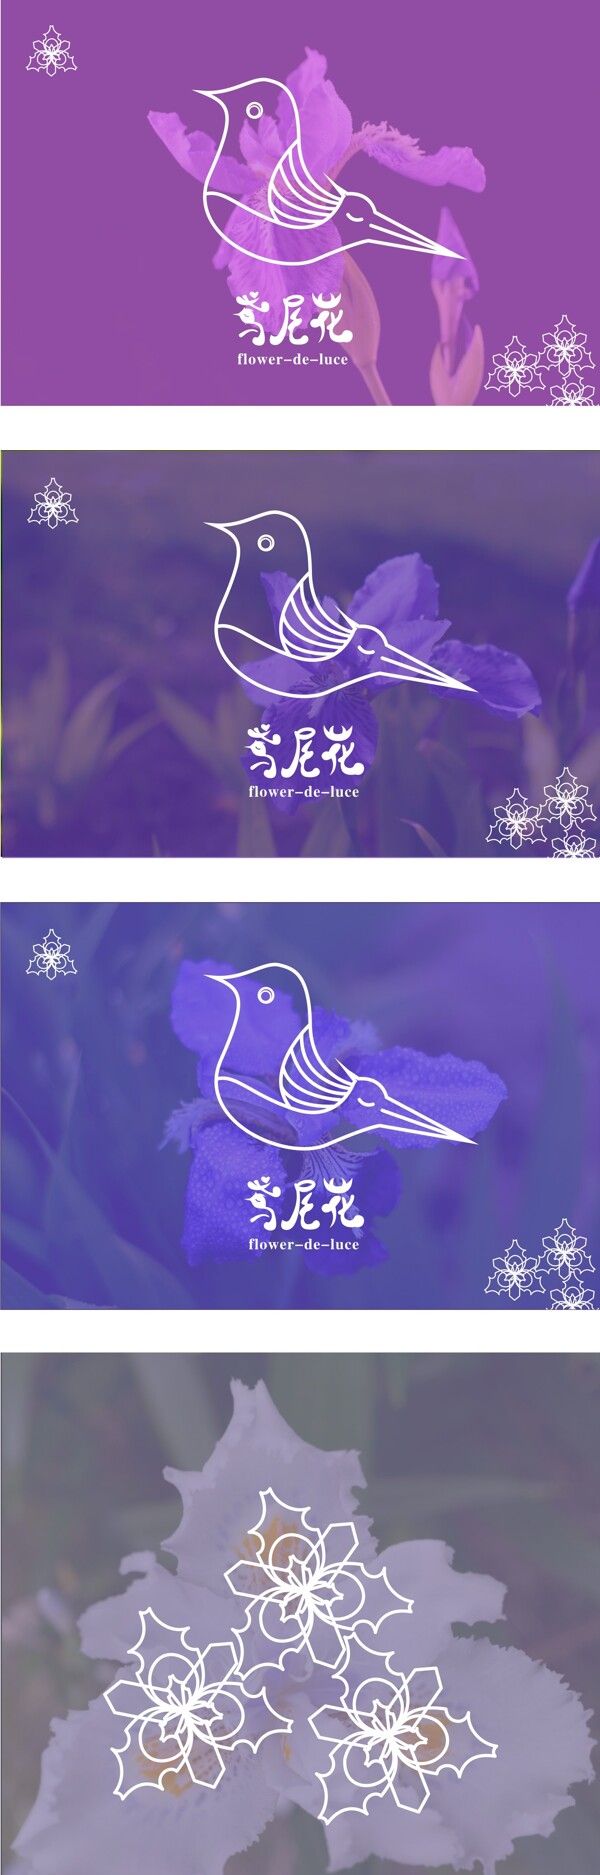 鸢尾花标志logo设计